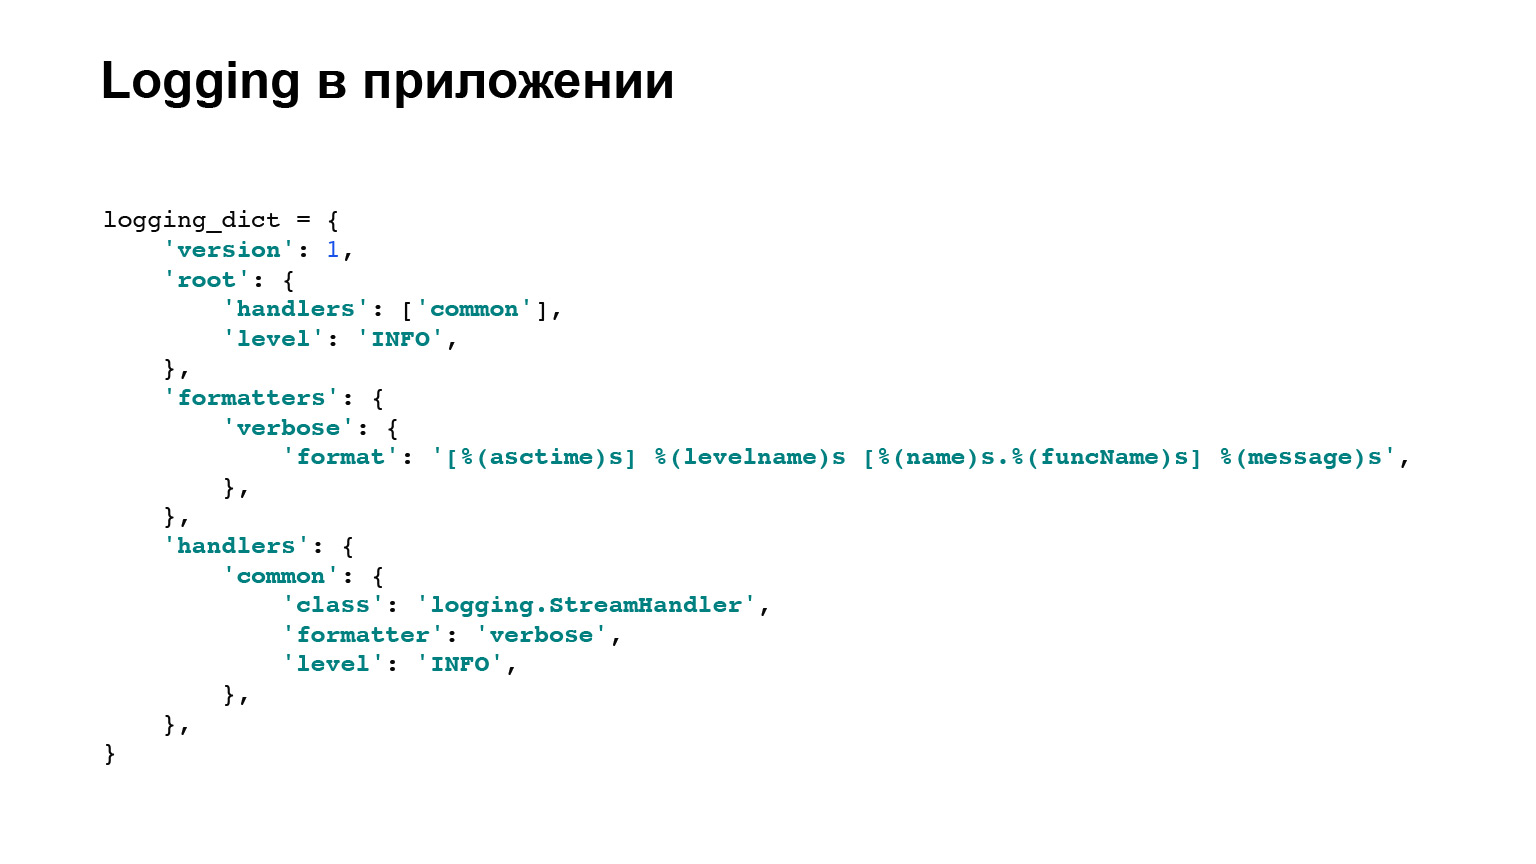 Удобное логирование на бэкенде. Доклад Яндекса - 7